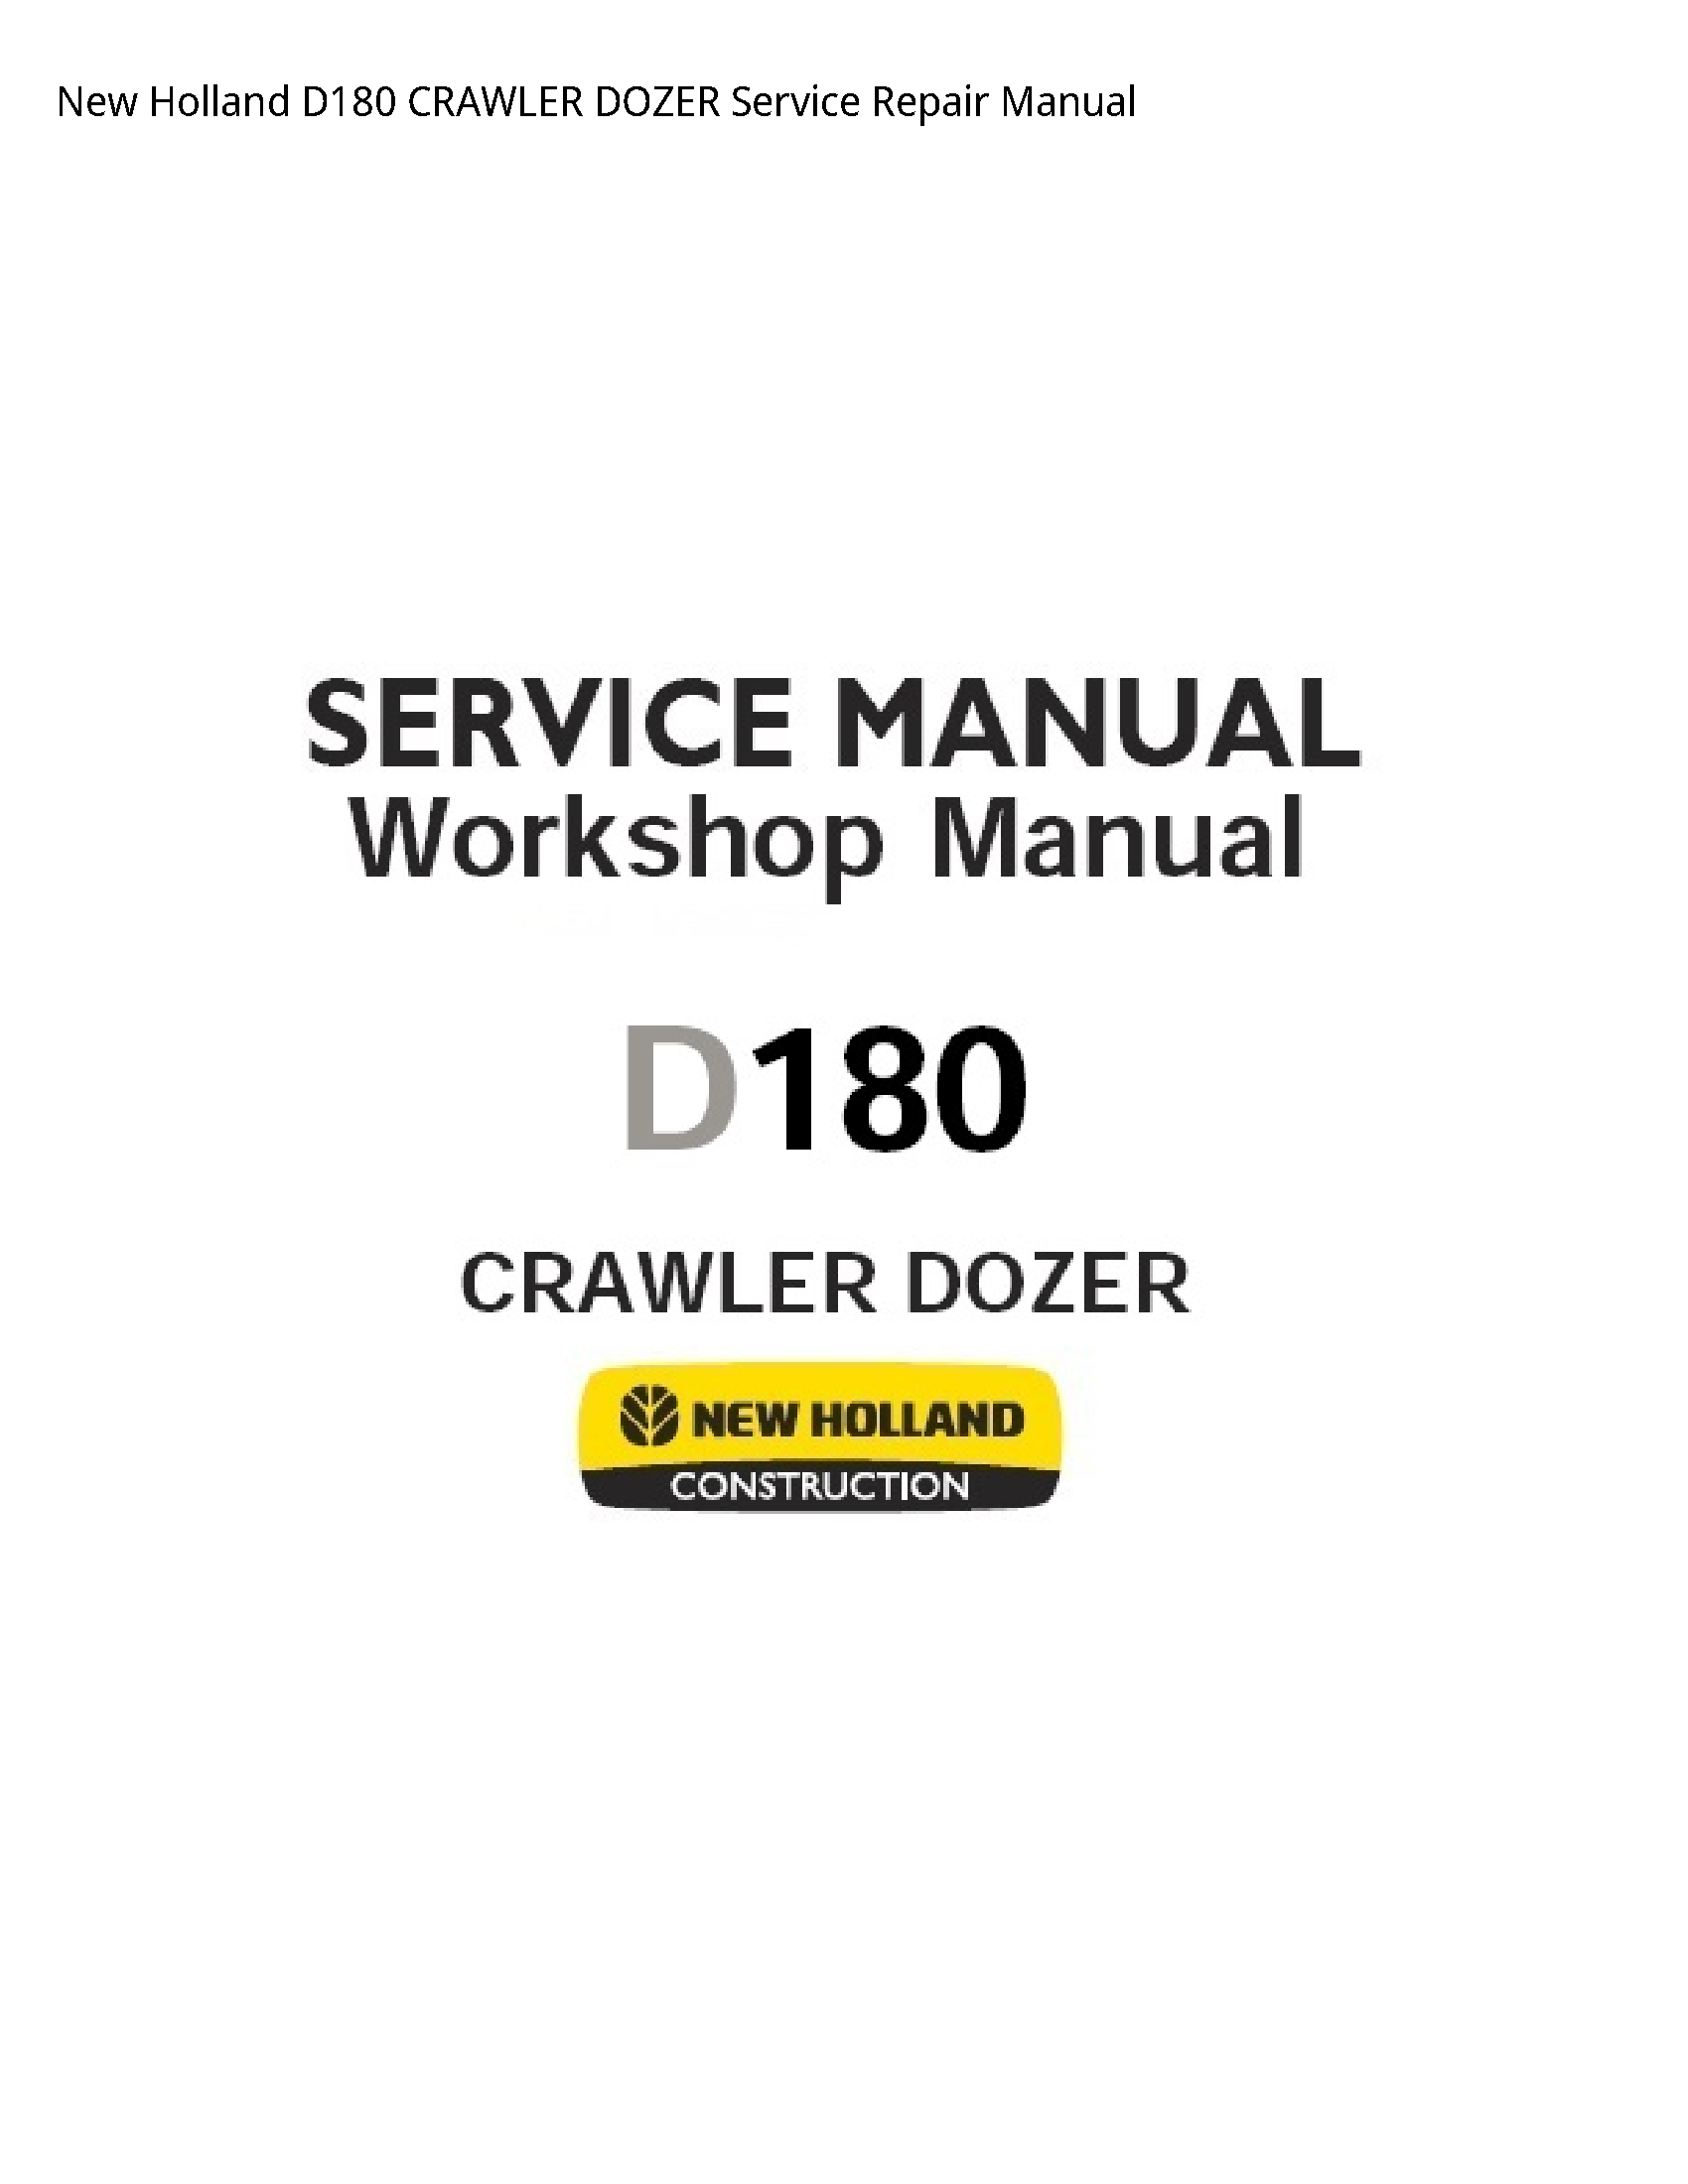 New Holland D180 CRAWLER DOZER manual